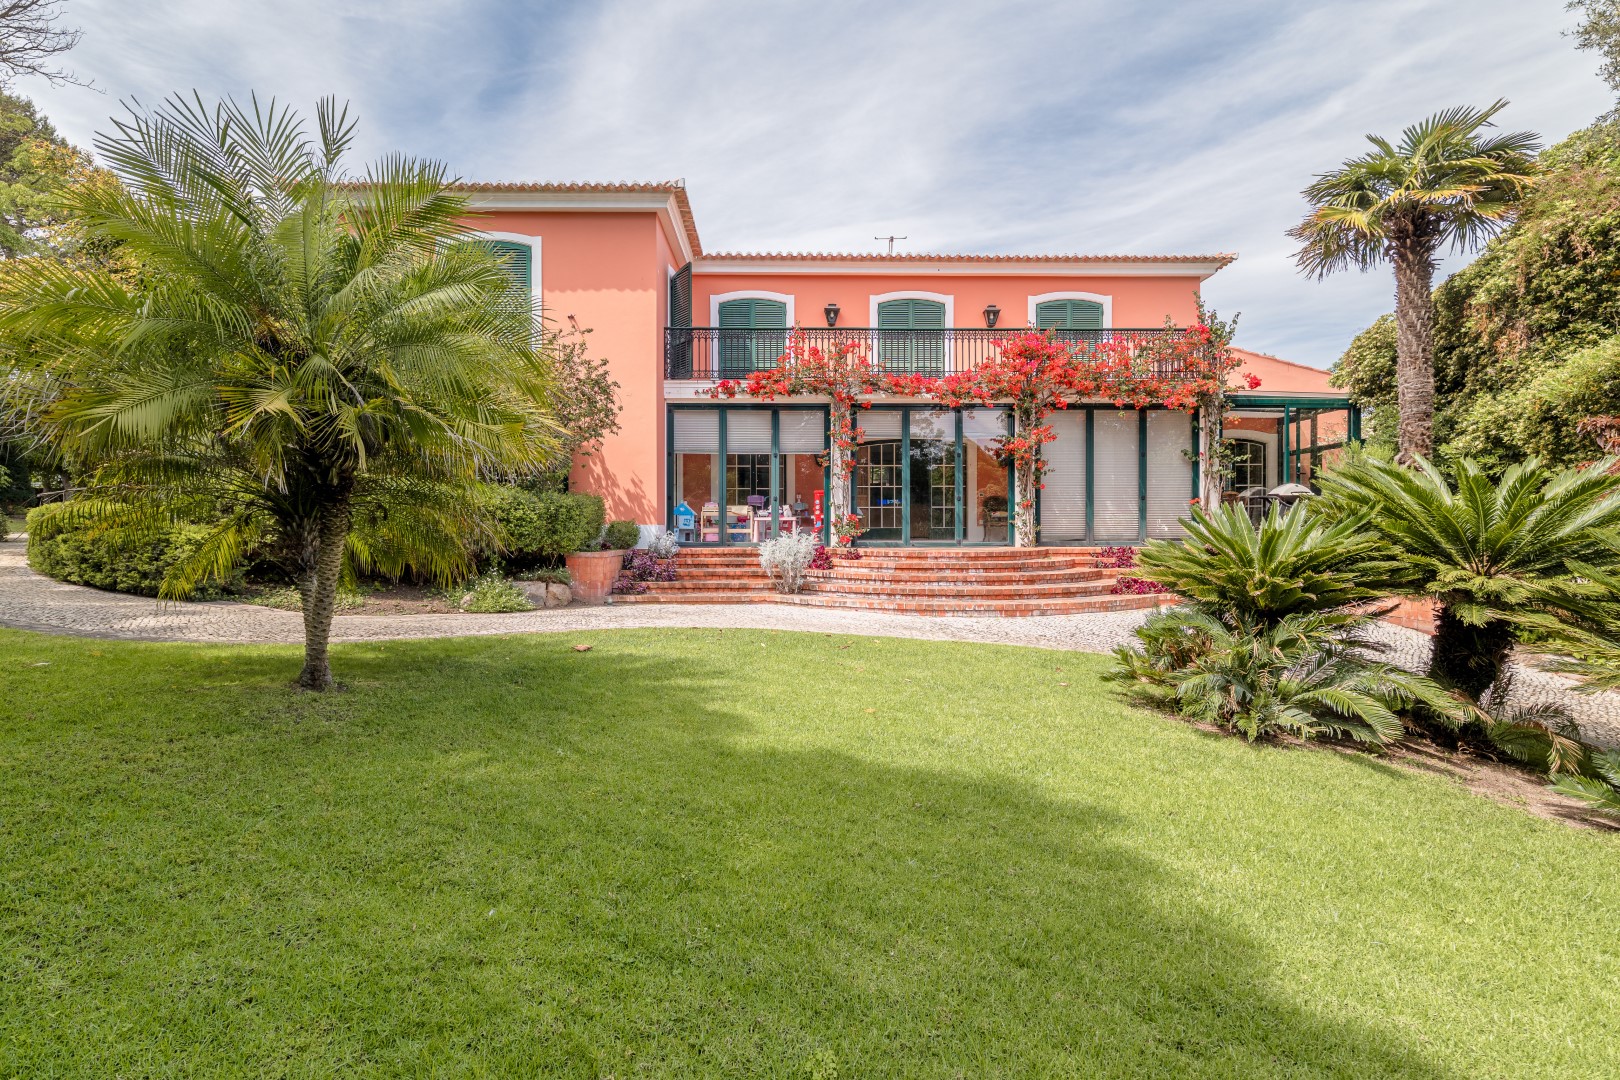 For Sale Detached Villa Birre Cascais Portugal Mor4893sp005